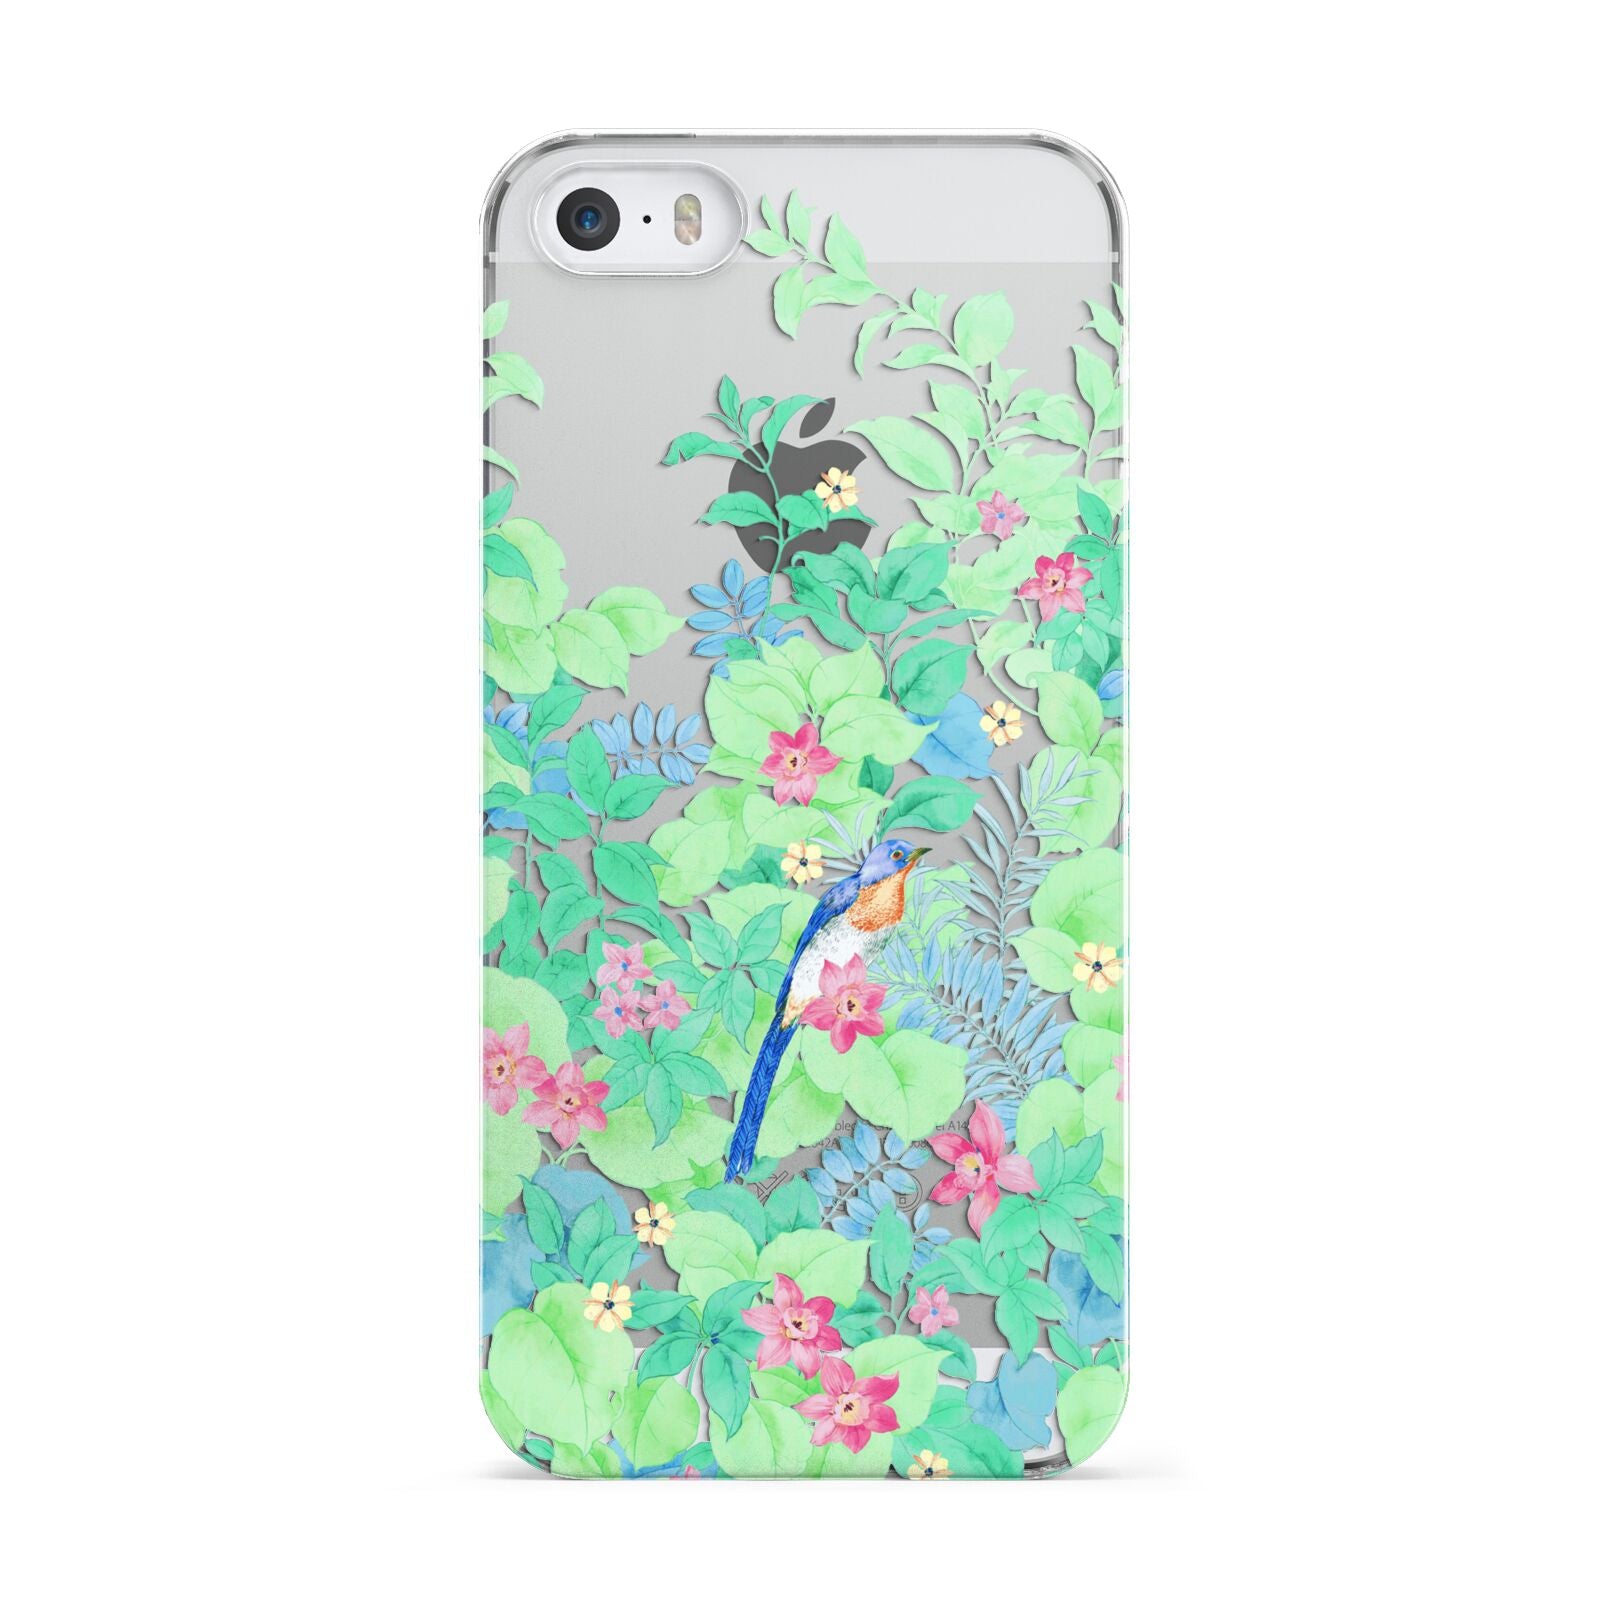 Watercolour Floral Apple iPhone 5 Case